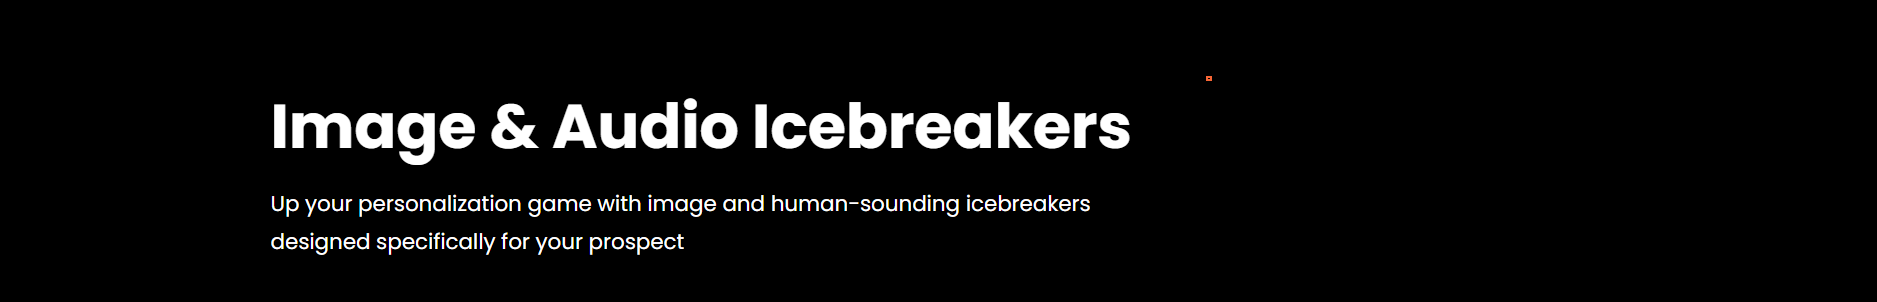 750-icebreakers